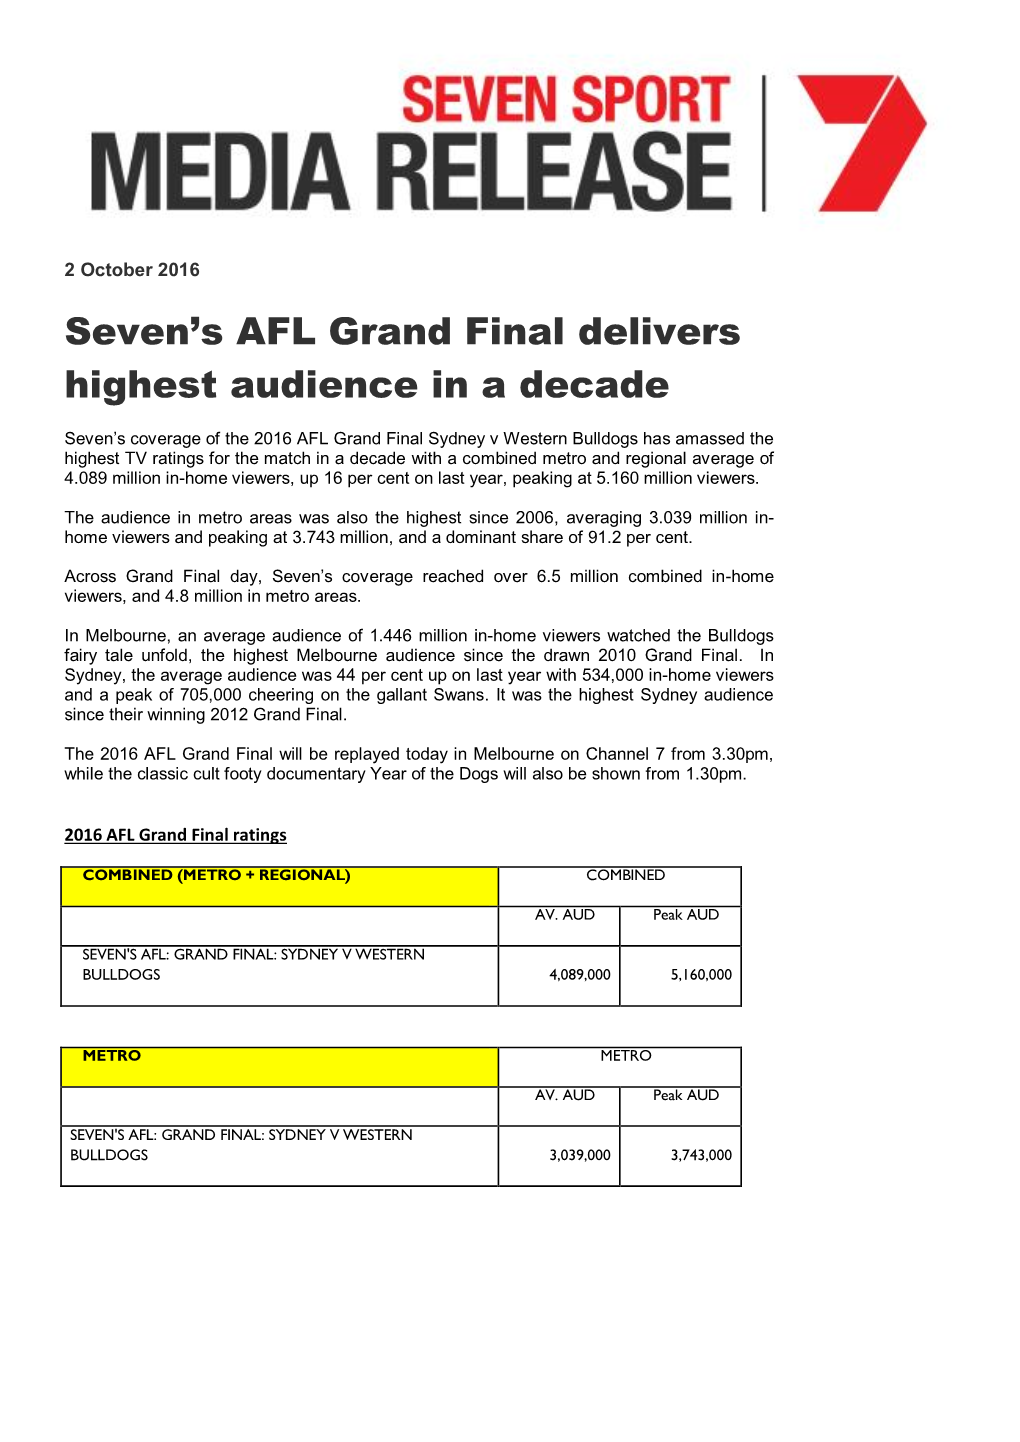 Seven's AFL Grand Final Delivers Highest Audience